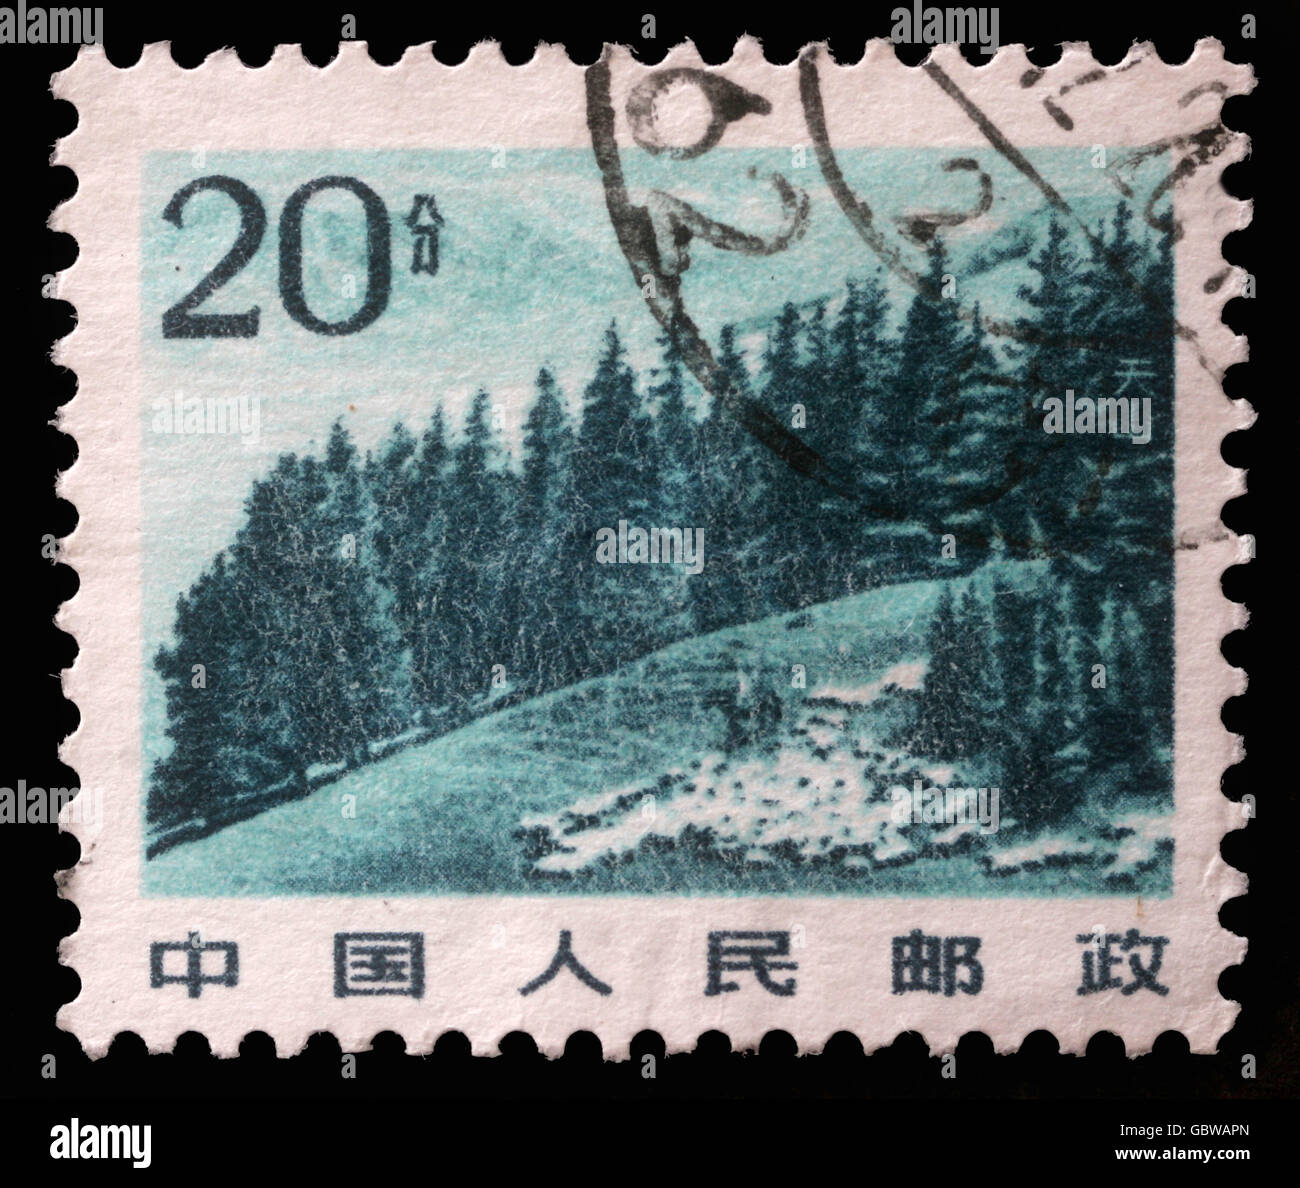 Timbres en Chine montre image de highland chinois avec des pins de la montagne Tianshan, vers 1983 Banque D'Images